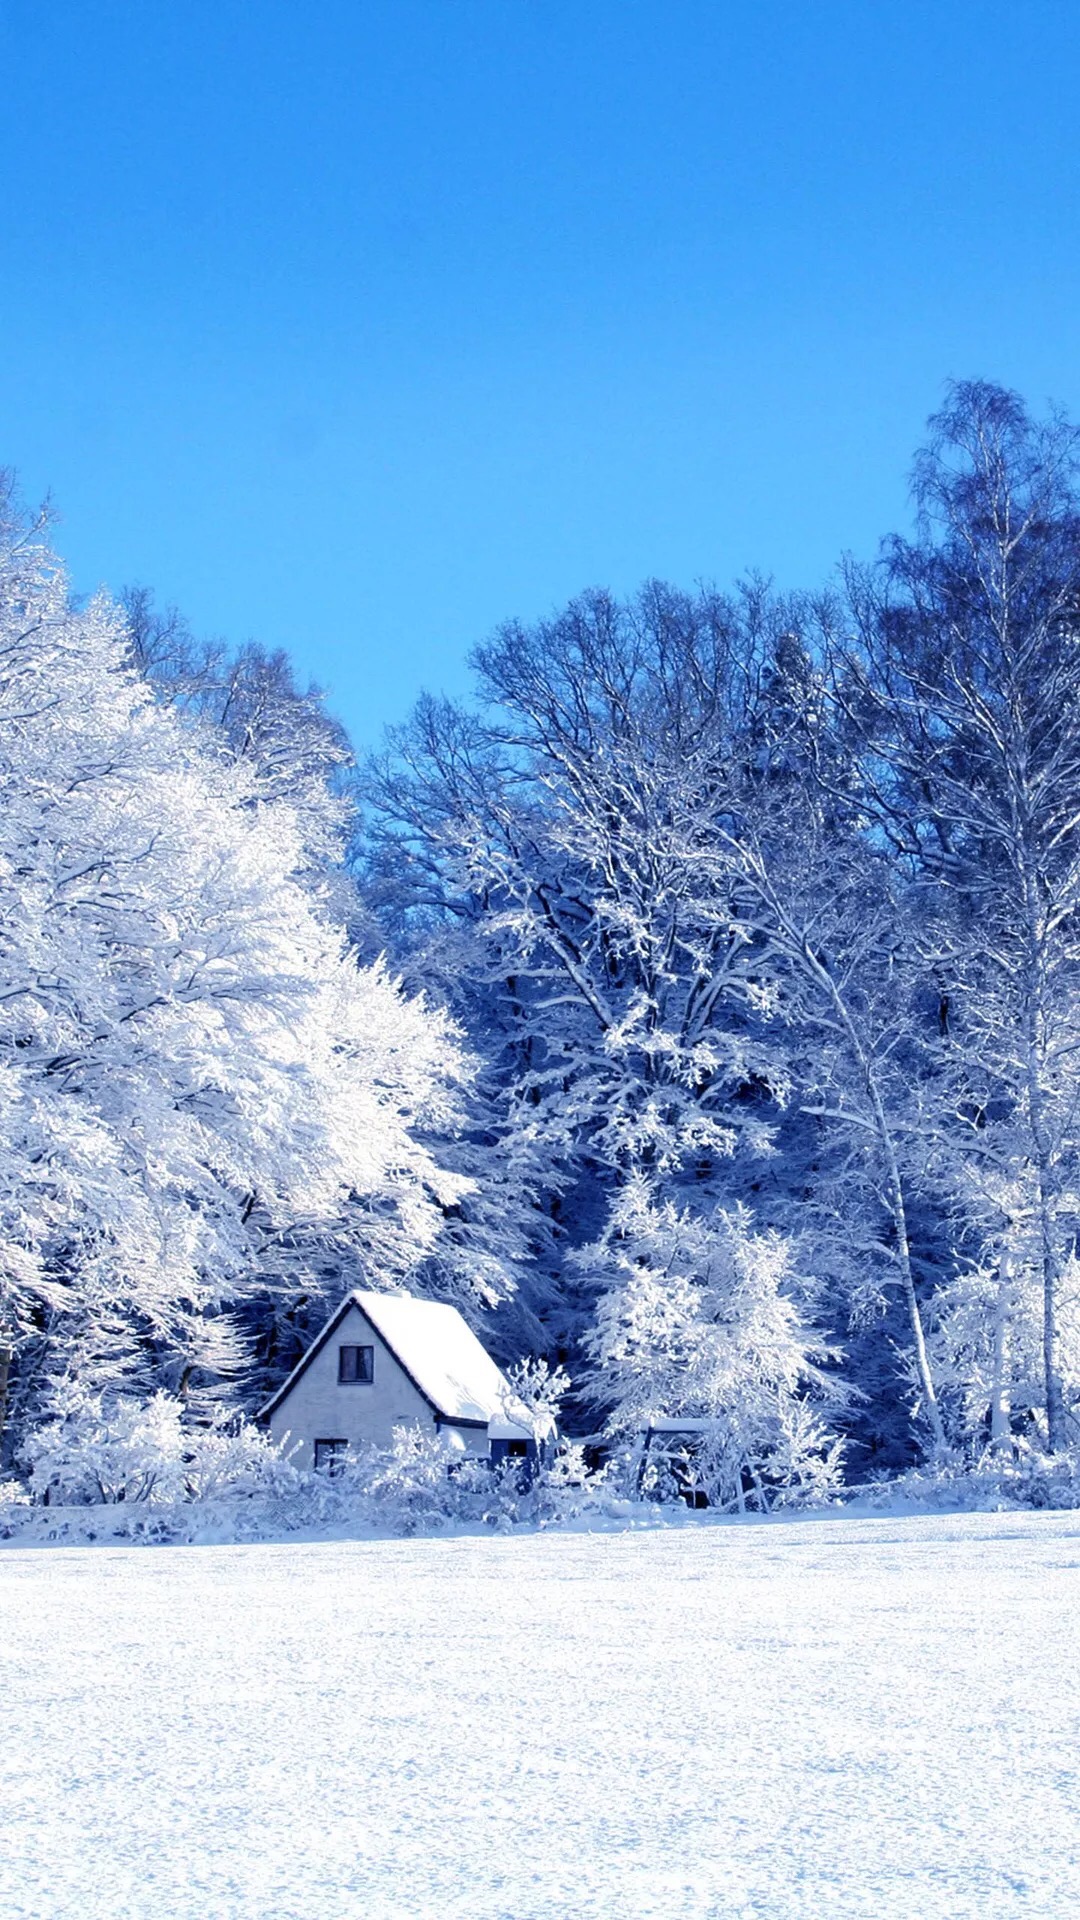 超美雪景手机屏保,壁纸:辽宁不下雪,只能看美景已解相思之情